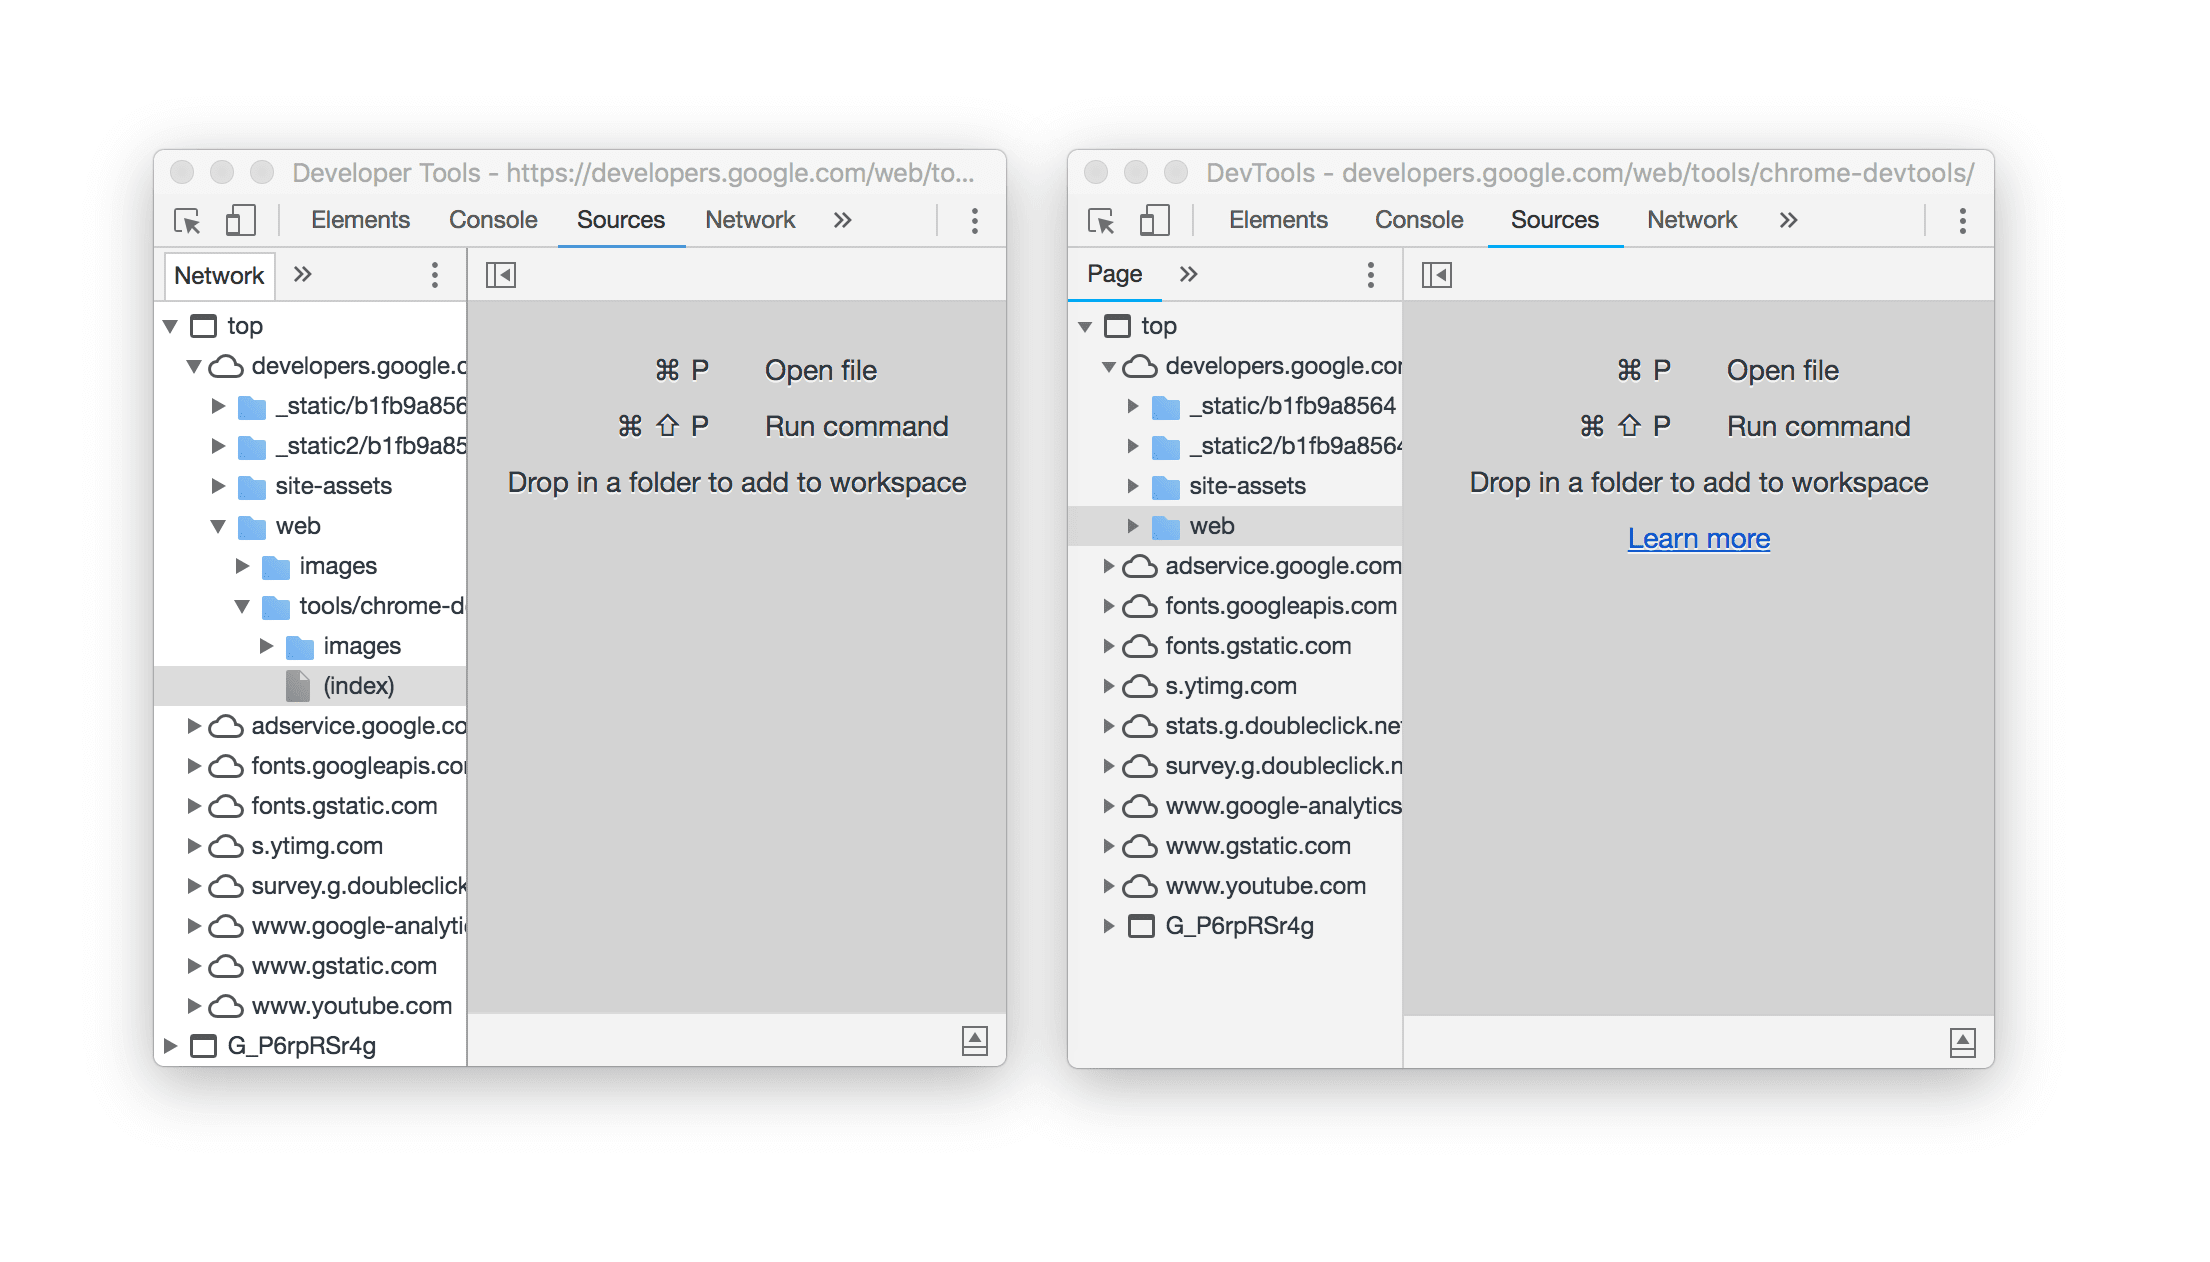 หน้าต่างเครื่องมือสำหรับนักพัฒนาเว็บ 2 หน้าต่างวางอยู่ข้างกัน ซึ่งแสดงให้เห็นว่าชื่อมีการเปลี่ยนแปลง